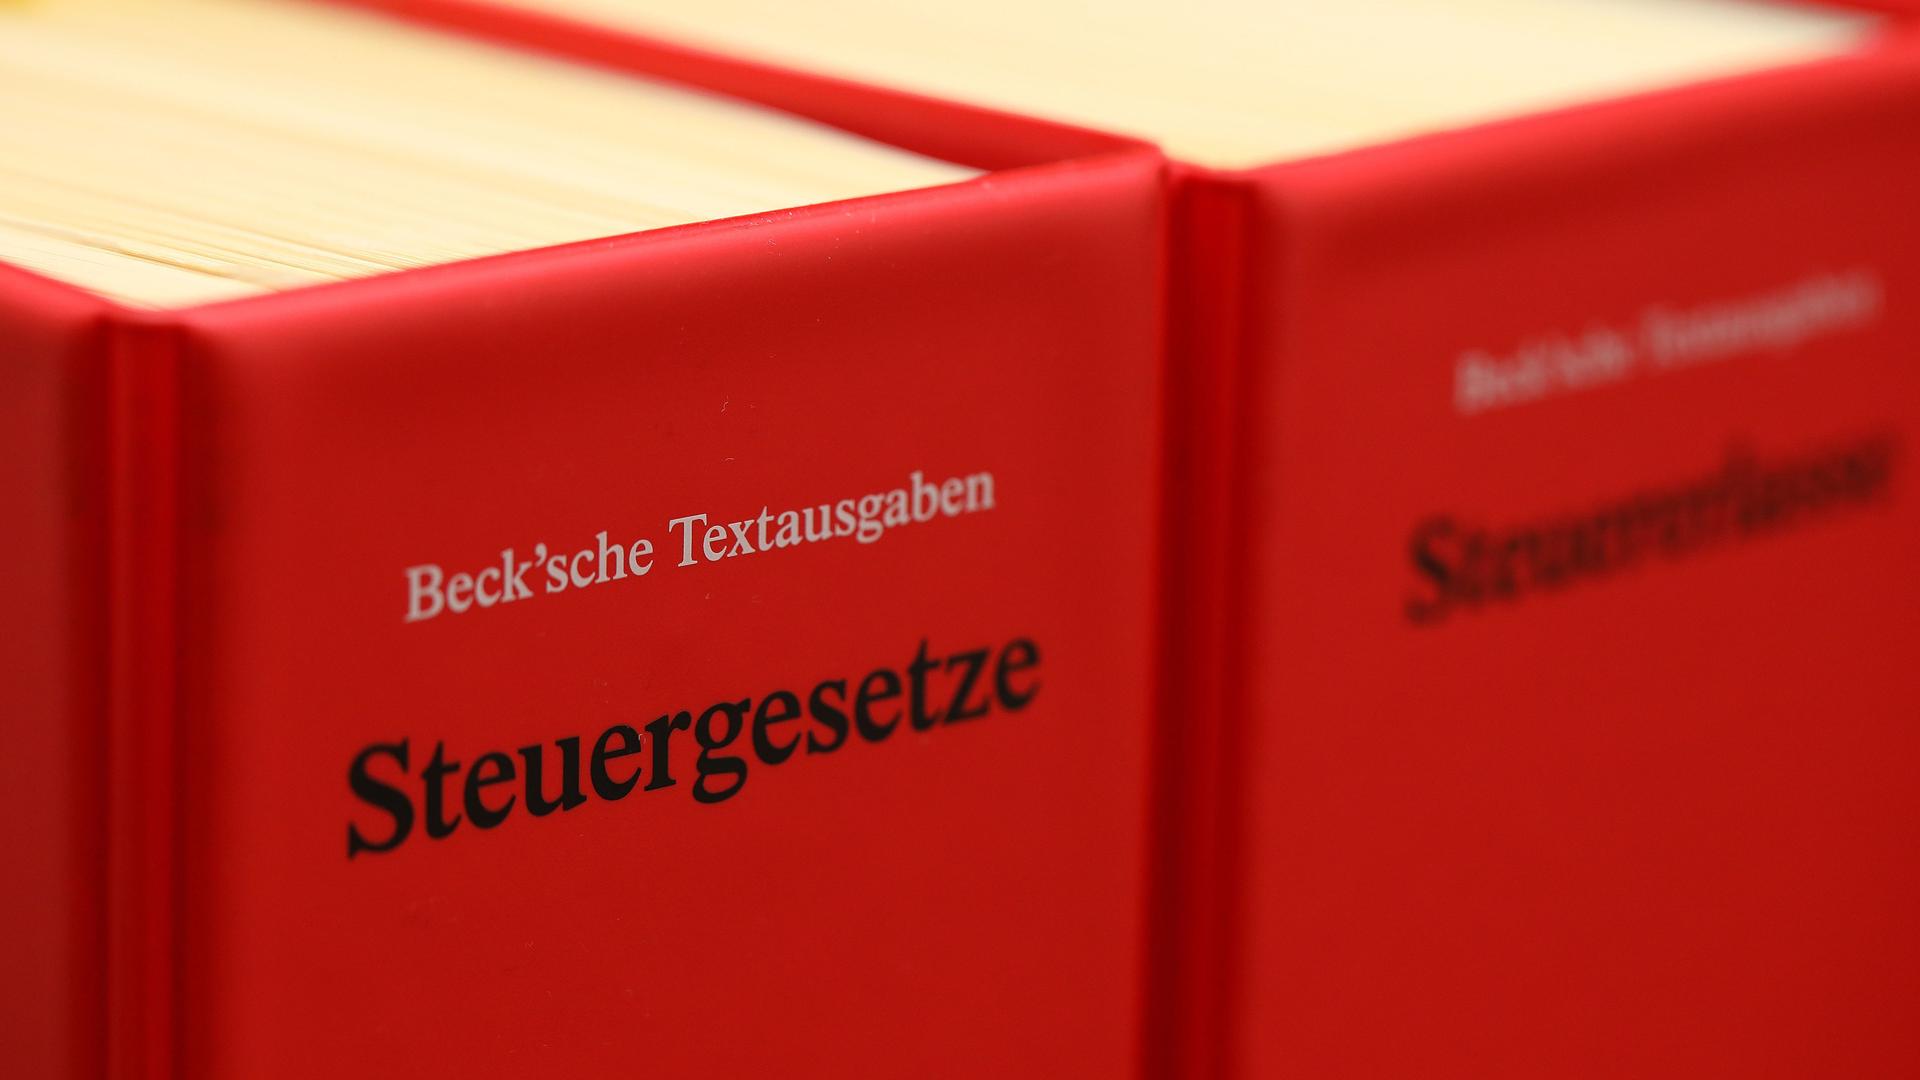 Zwei Steuergesetzbücher in rotem Einband stehen in einem Regal.